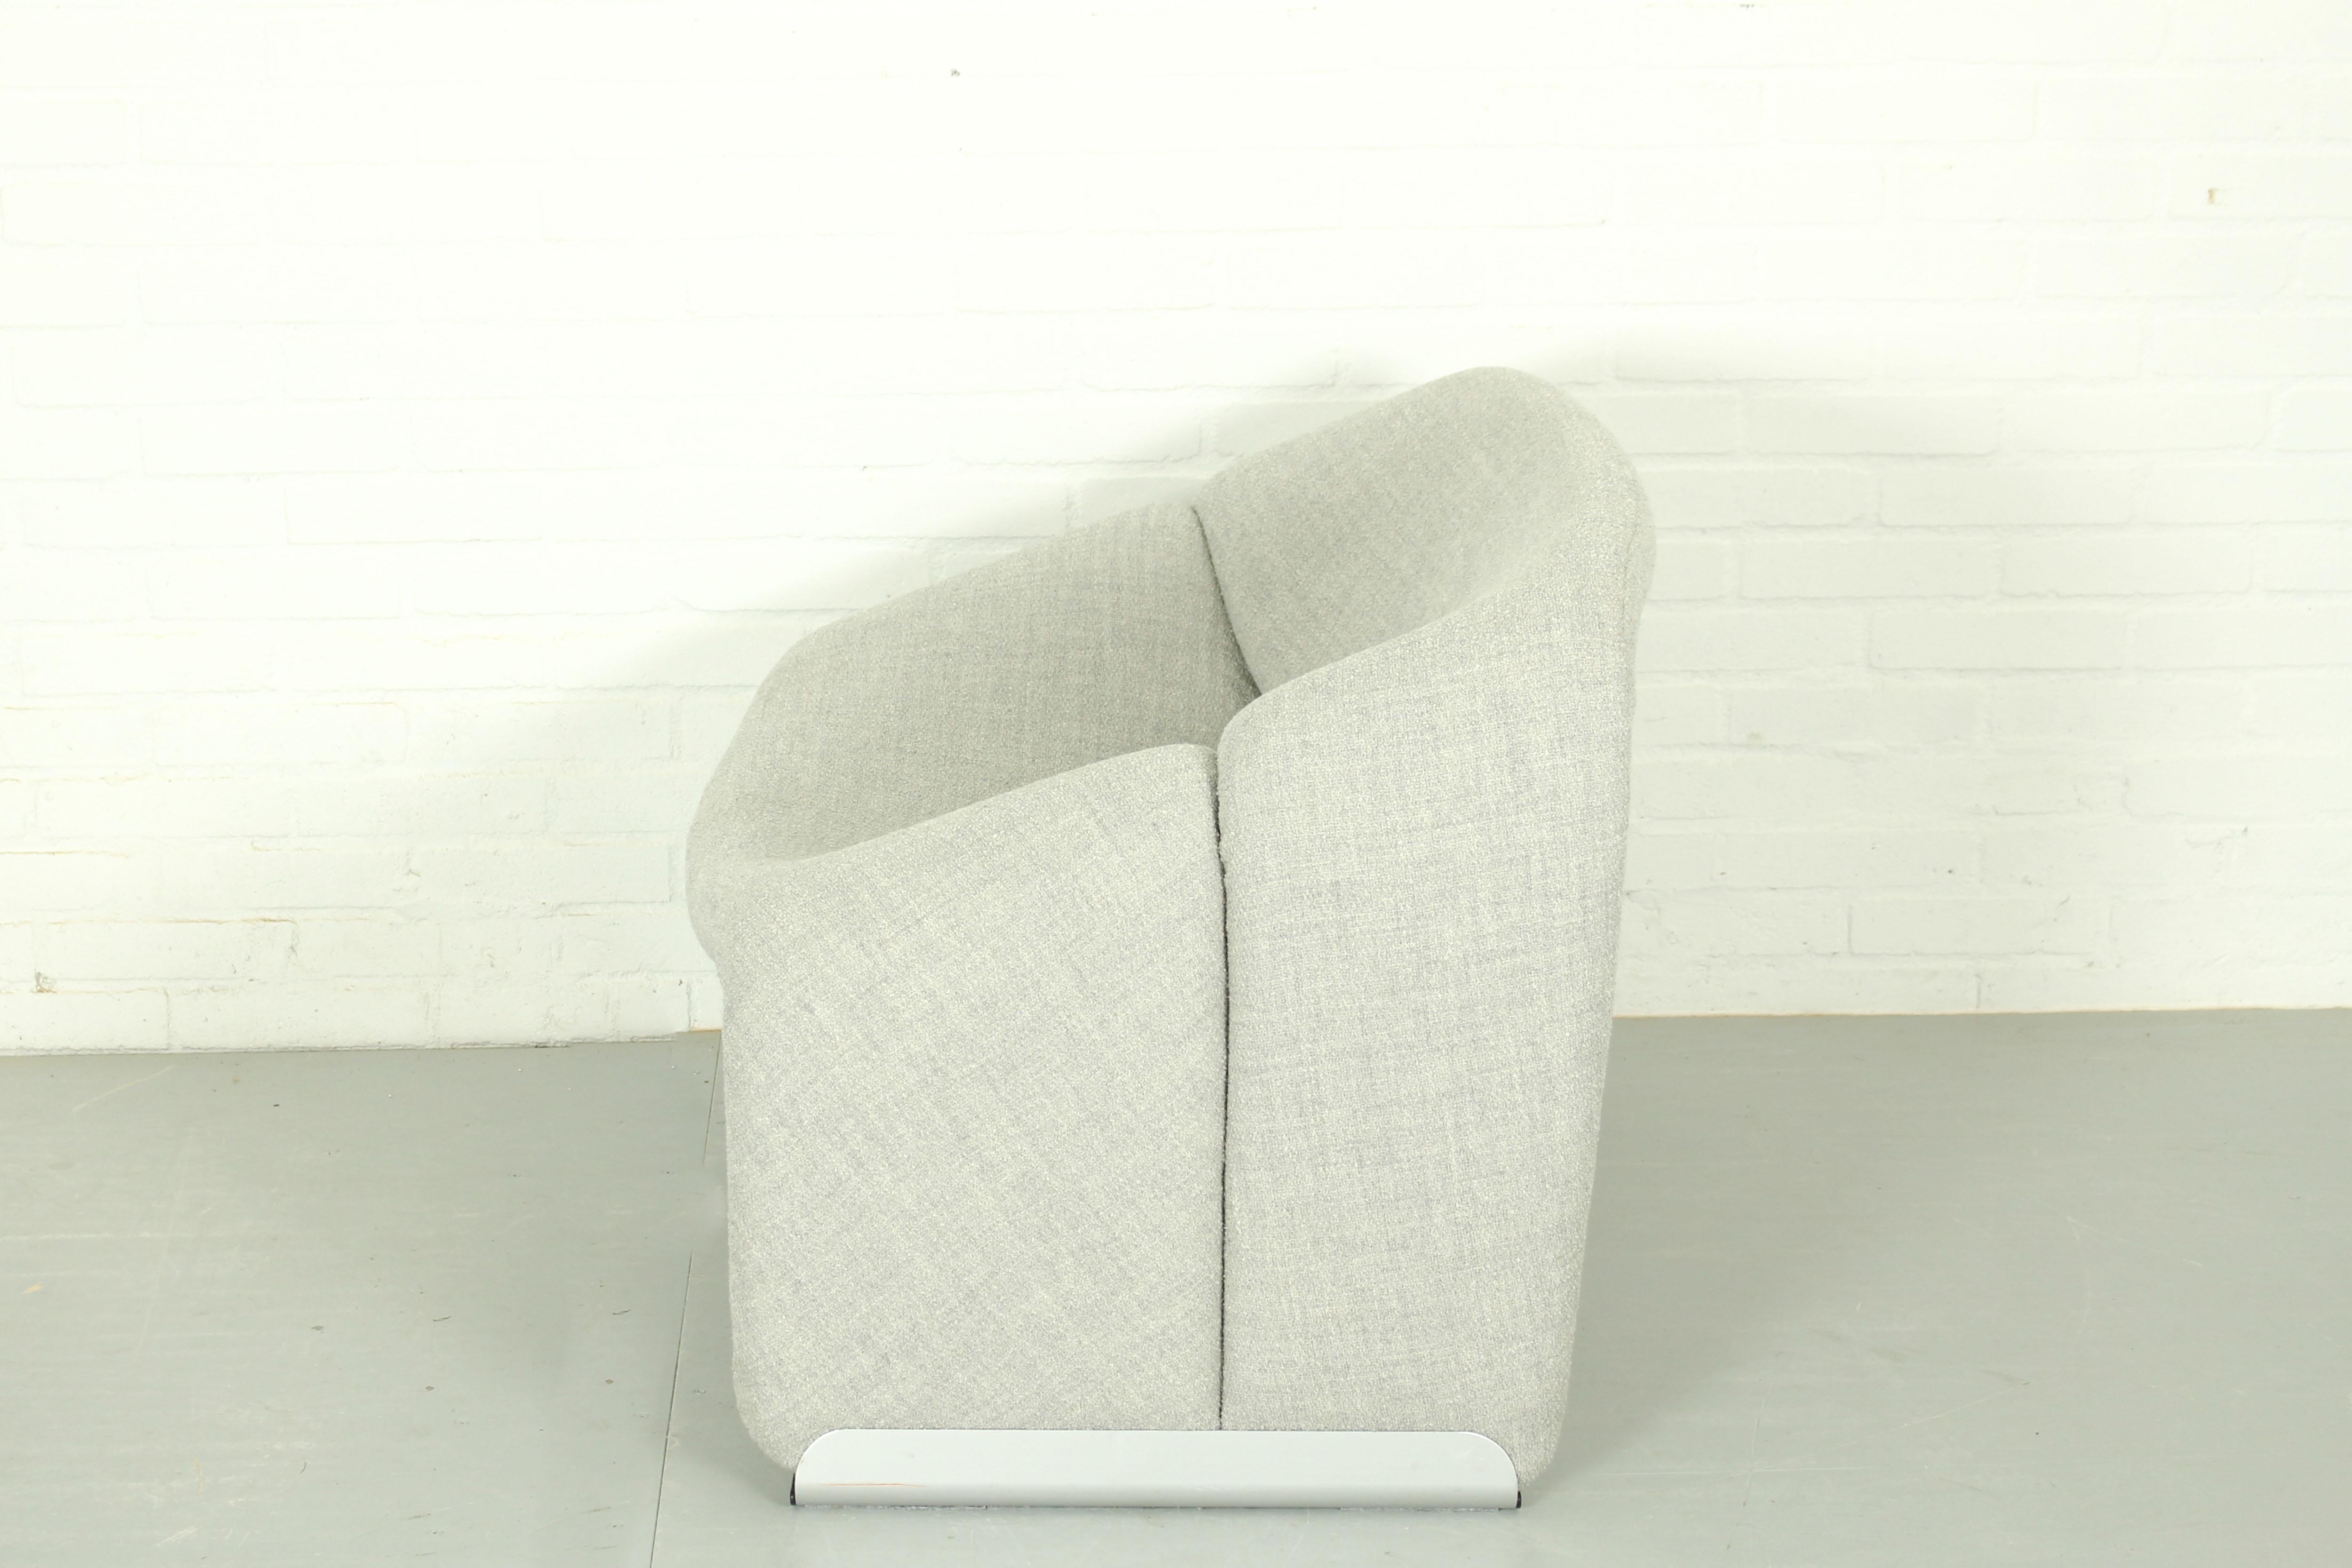 Der französische Top-Designer Pierre Paulin hat für Artifort den groovy chair (oder F598) entworfen. Großer Komfort und ein zeitloses, kultiges Design. Neu gepolstert mit Kvadrat Outback Stoff Farbe 111. 

Abmessungen: 64cm H, 85cm B, 67cm T. 
